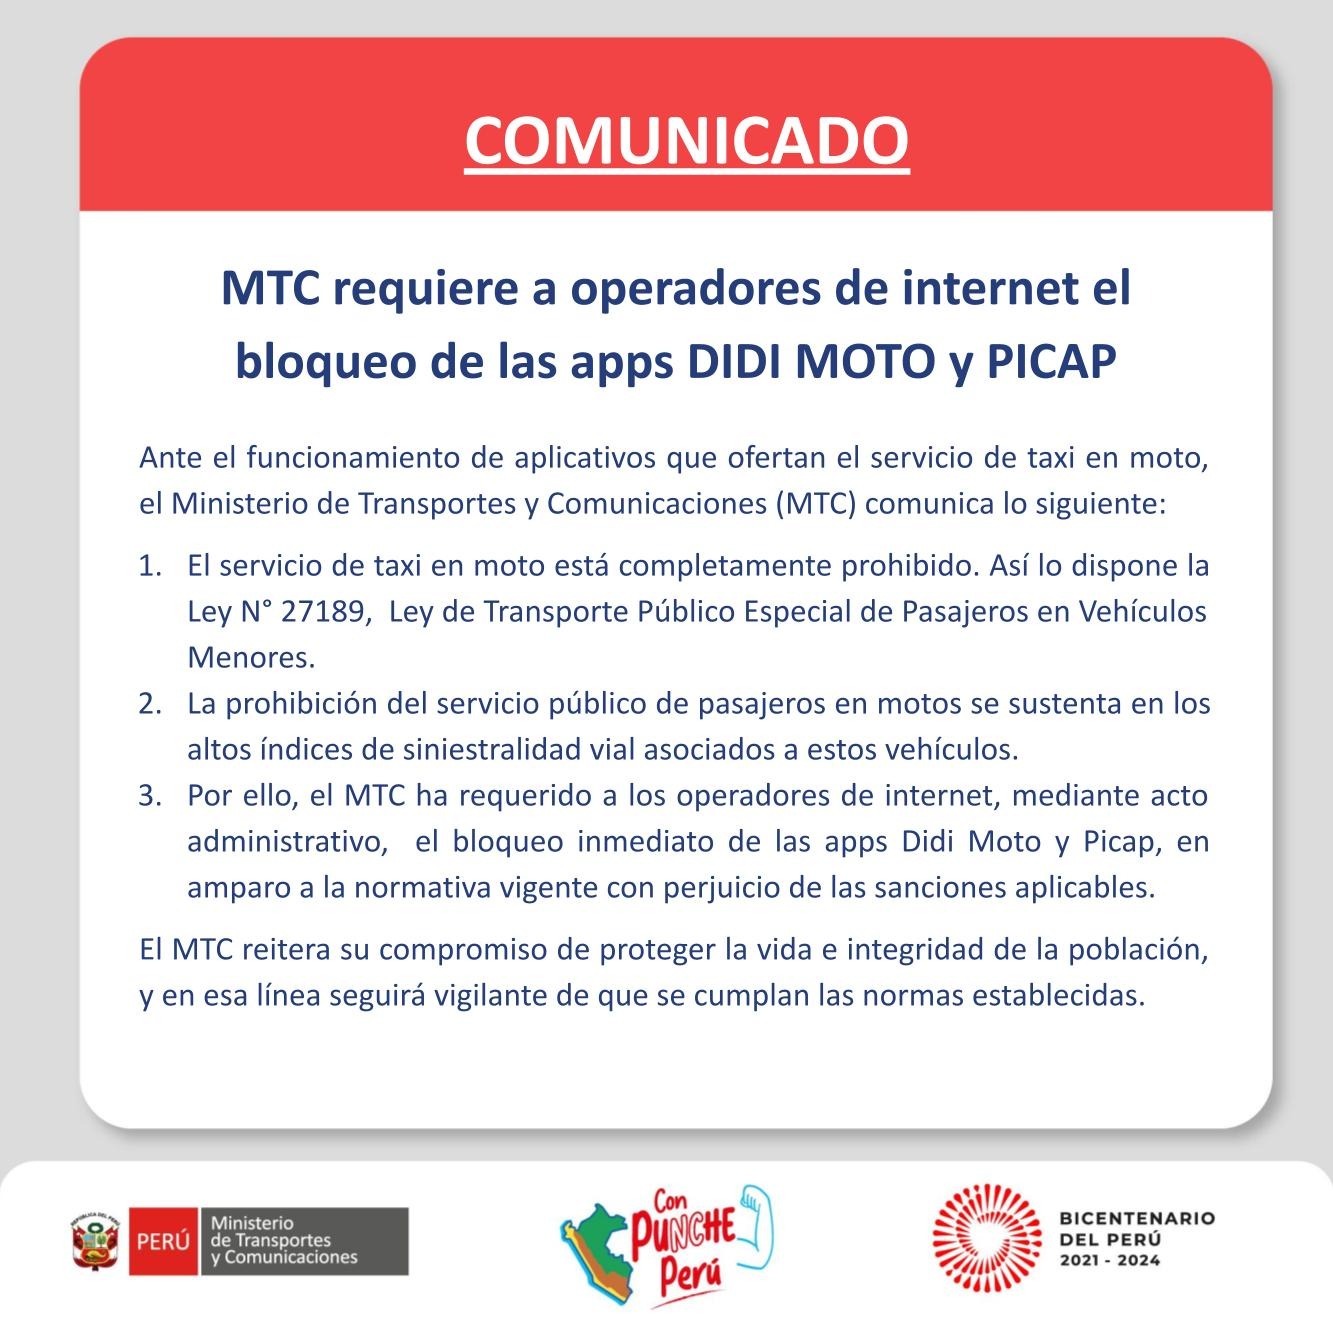 MTC solicita bloqueo de aplicativos Didi Moto y Picap por ofrecer servicio de taxi en moto 